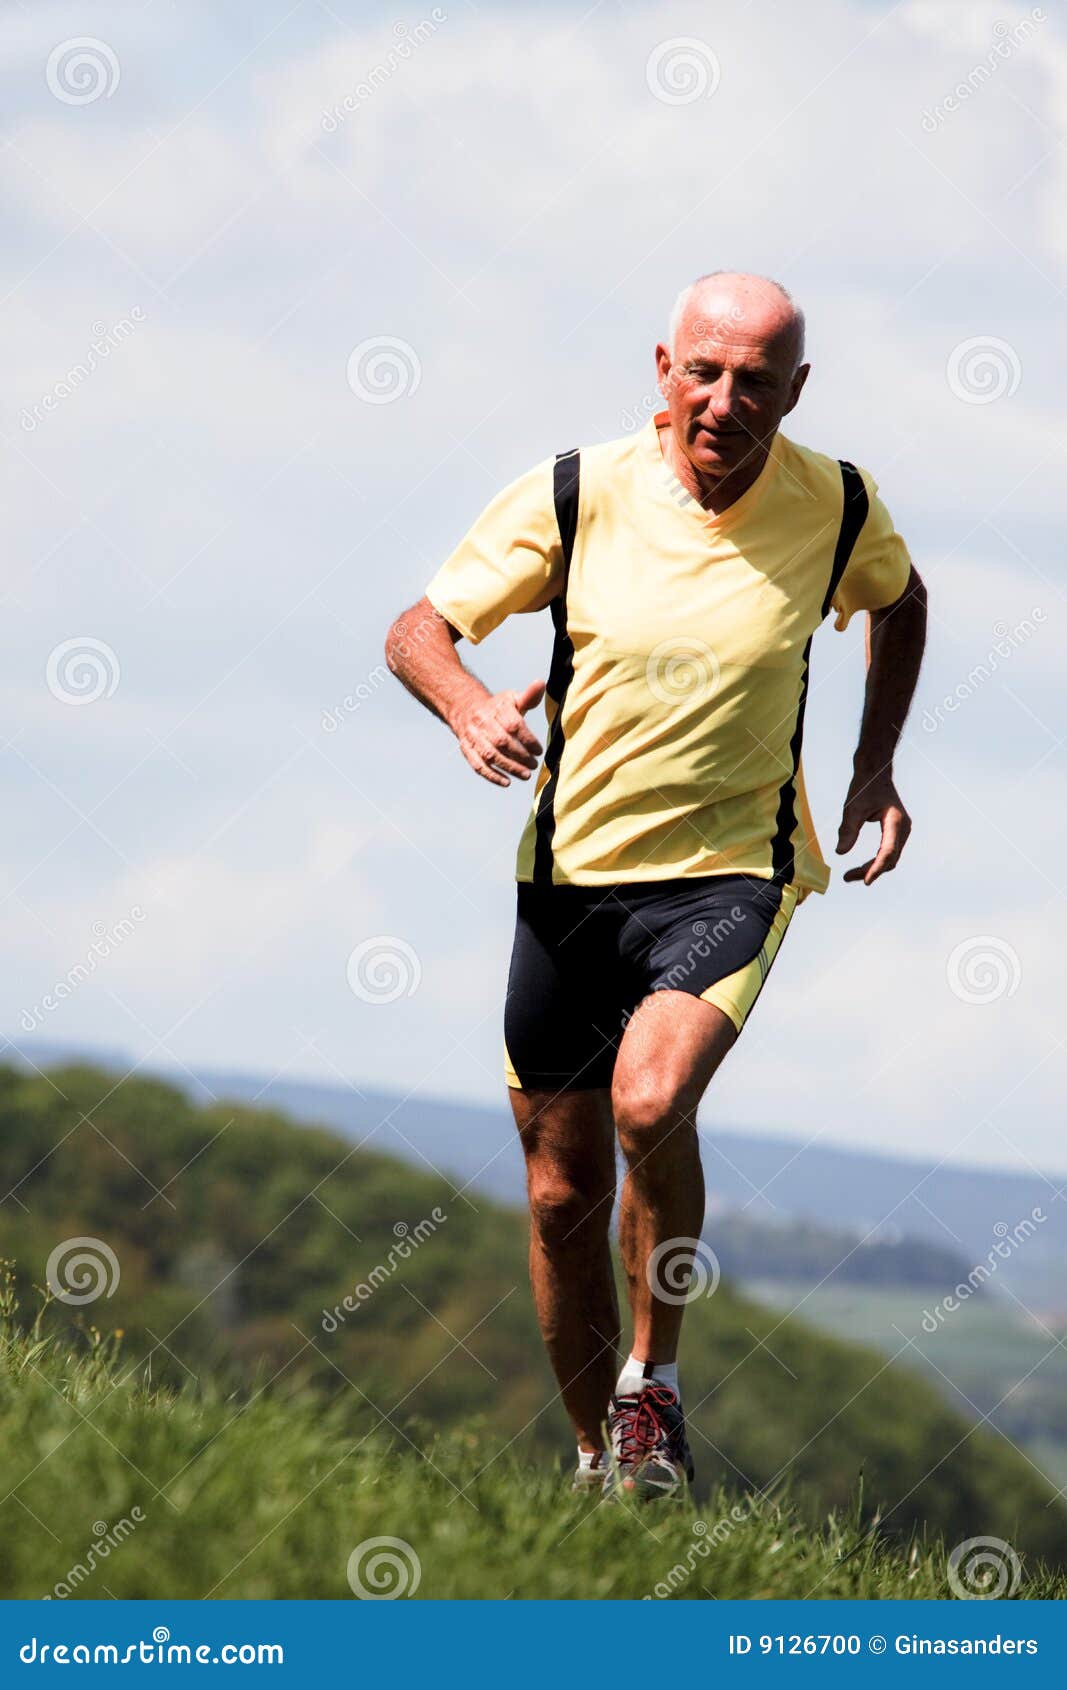 older-man-jogging-running-meadow-9126700.jpg